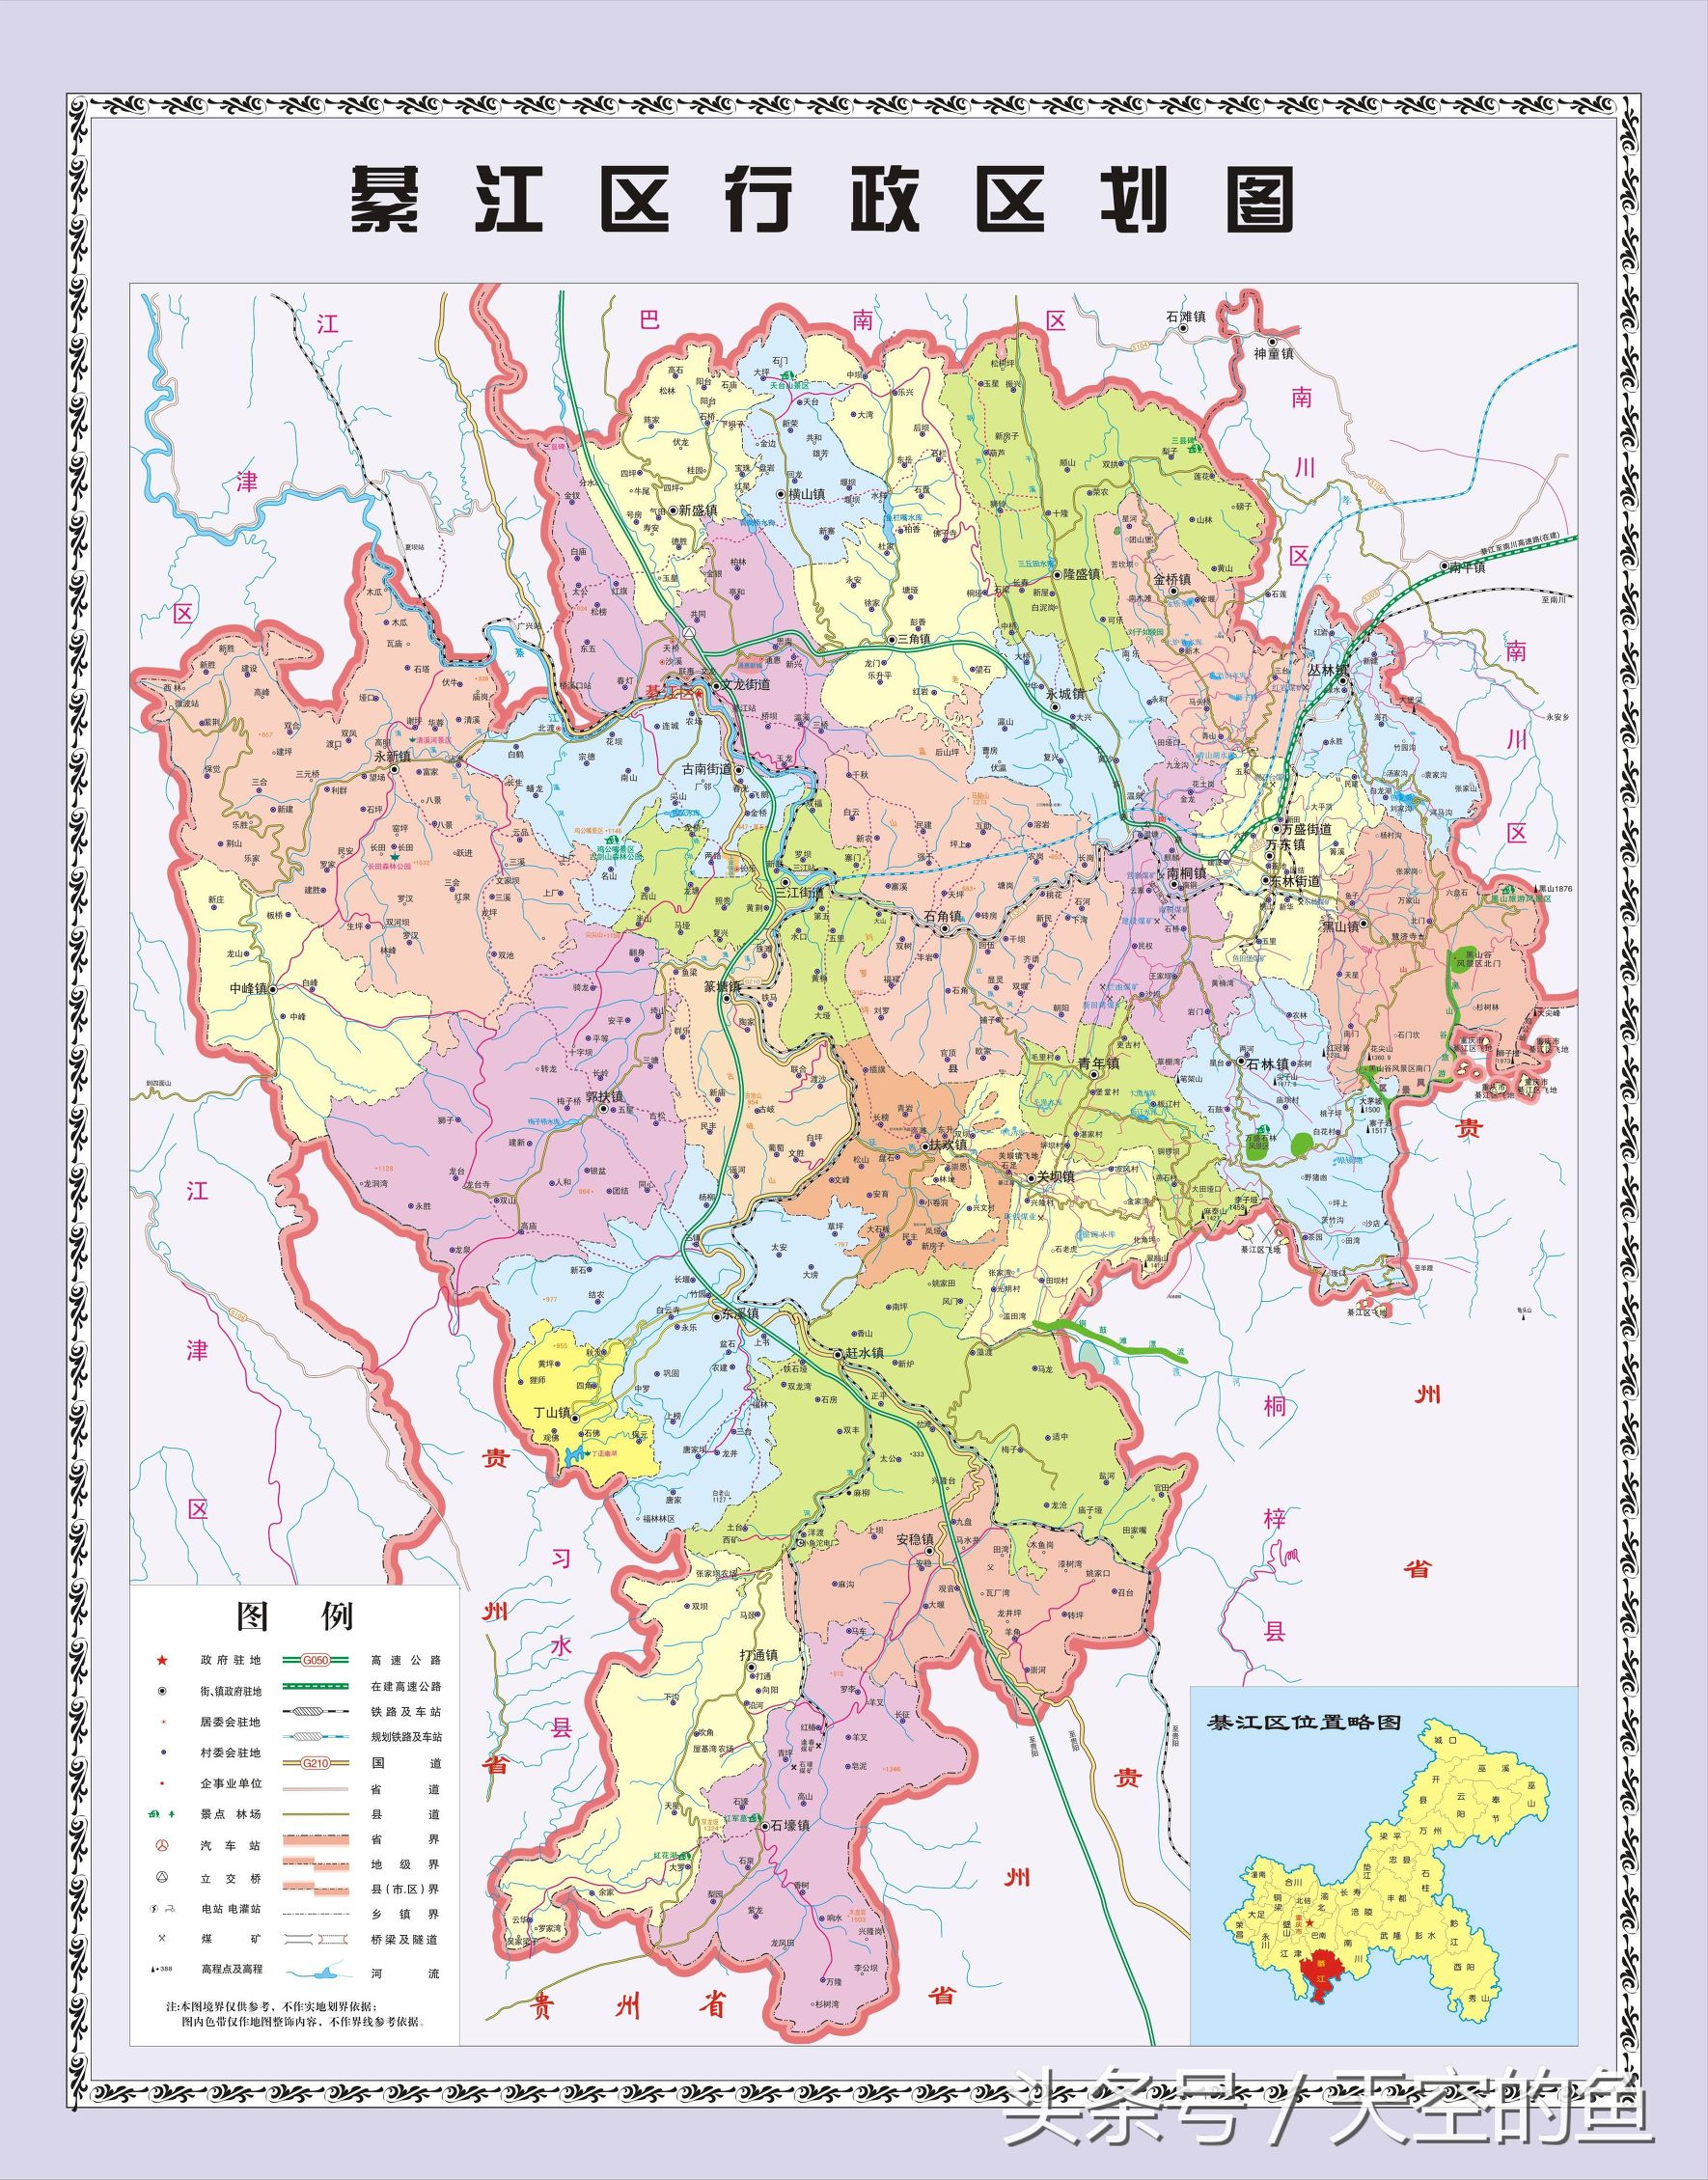 重庆直辖市人口有多少 哪个区域的人口多